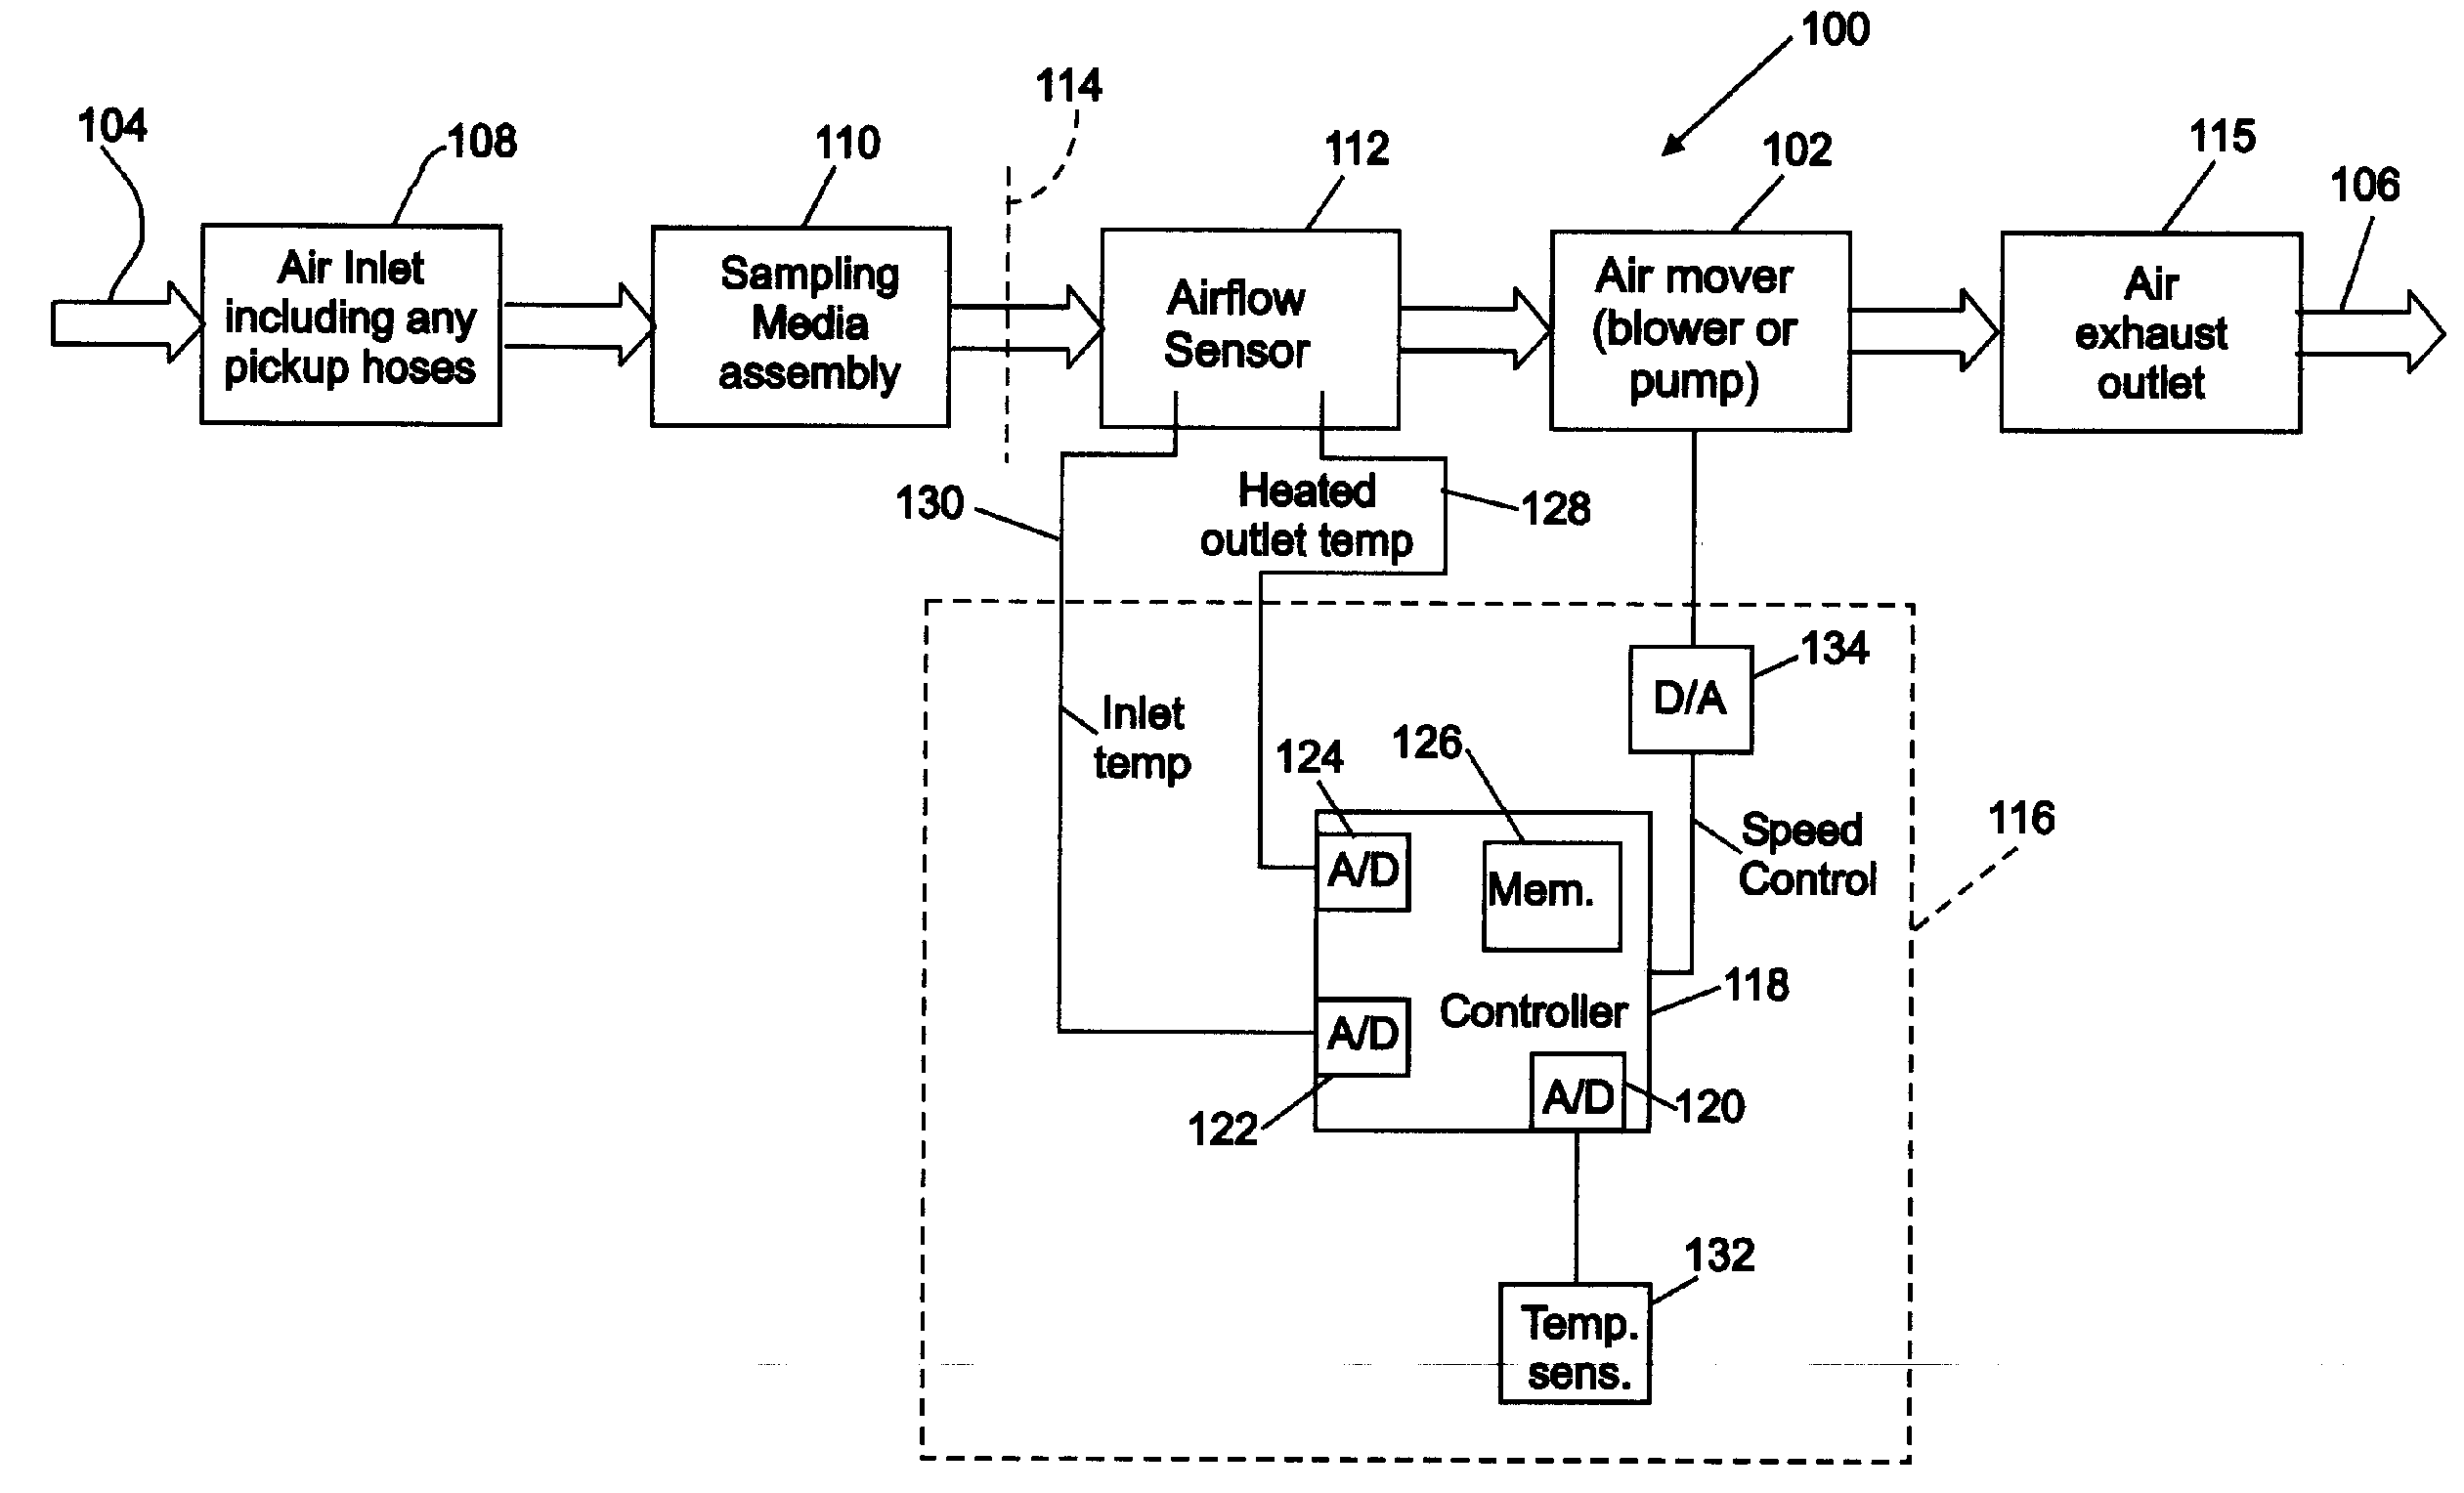 Air sampler with integrated airflow sensing